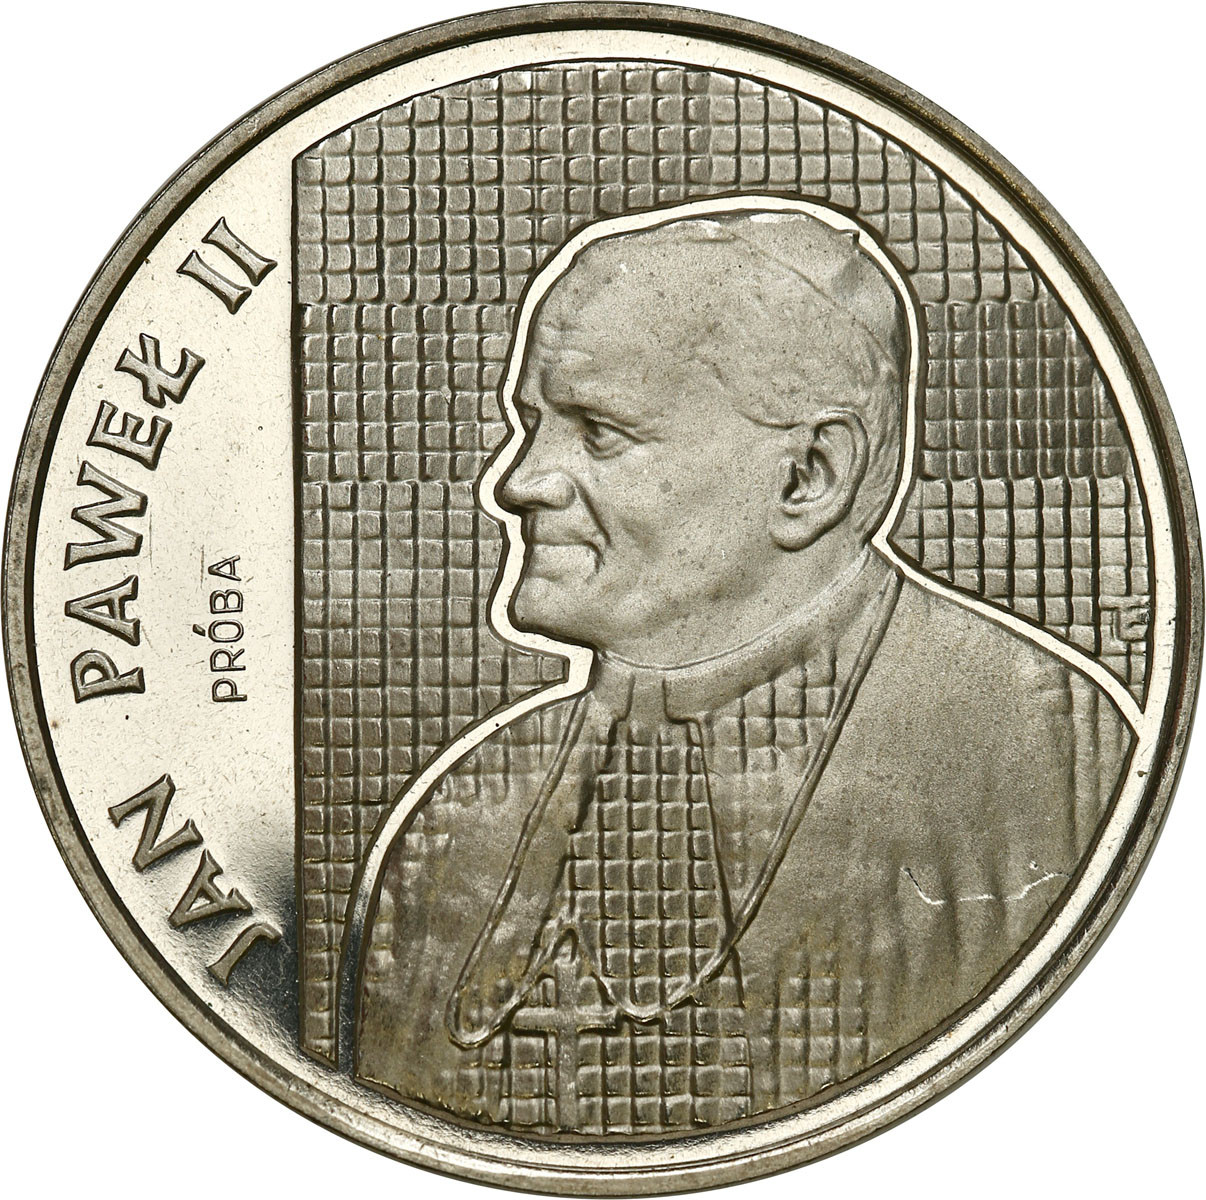 PRÓBA Nikiel 10.000 złotych 1989 Jan Paweł II